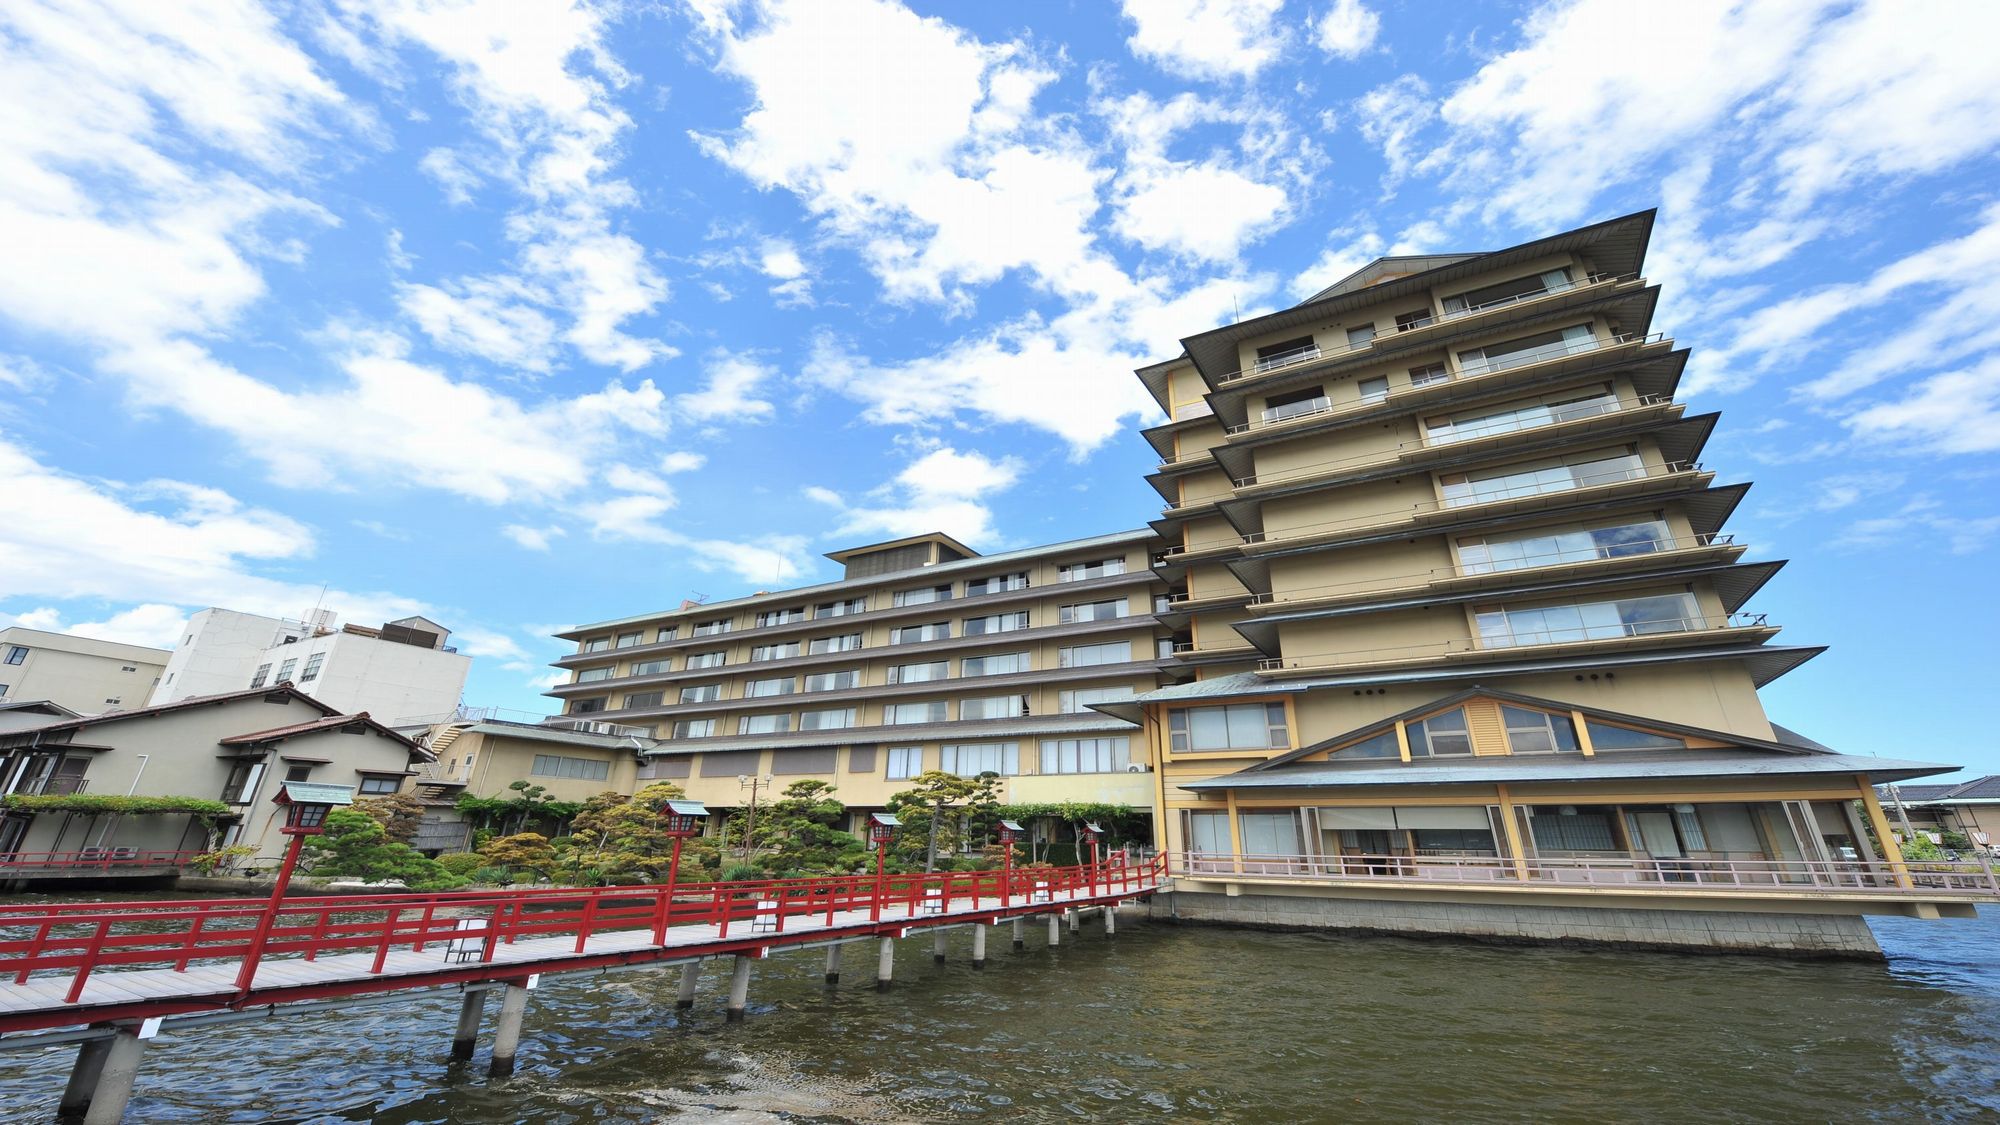 鳥取県のはわい温泉で快適な宿を教えてください